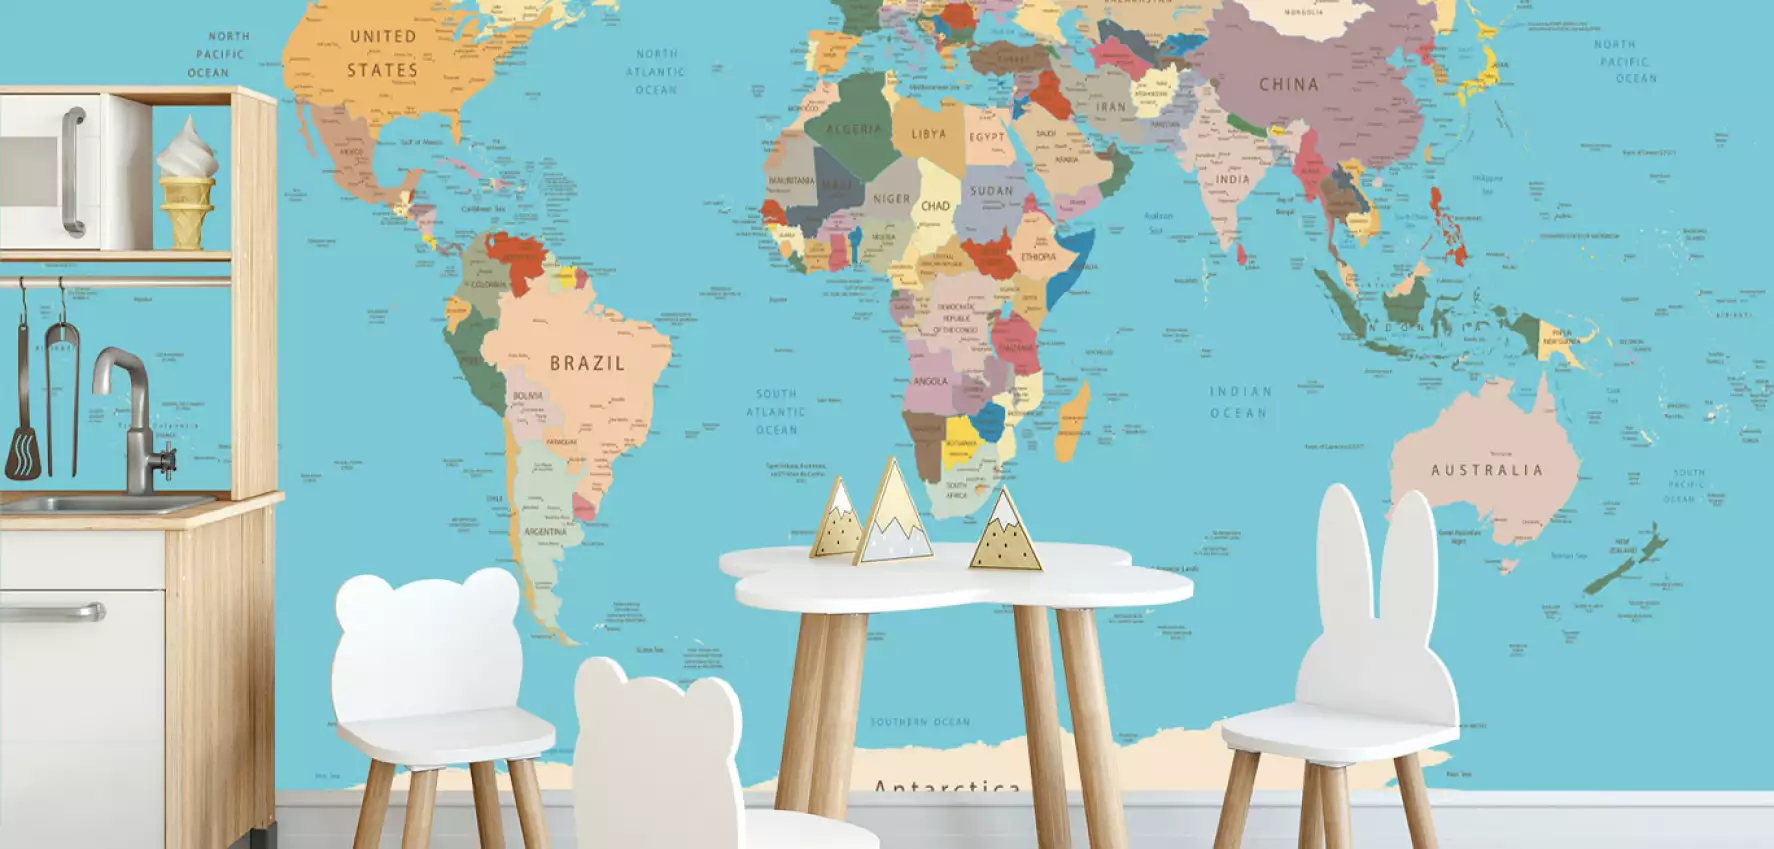 World map│Cartes du monde│Papier peint panoramique │Hexoa